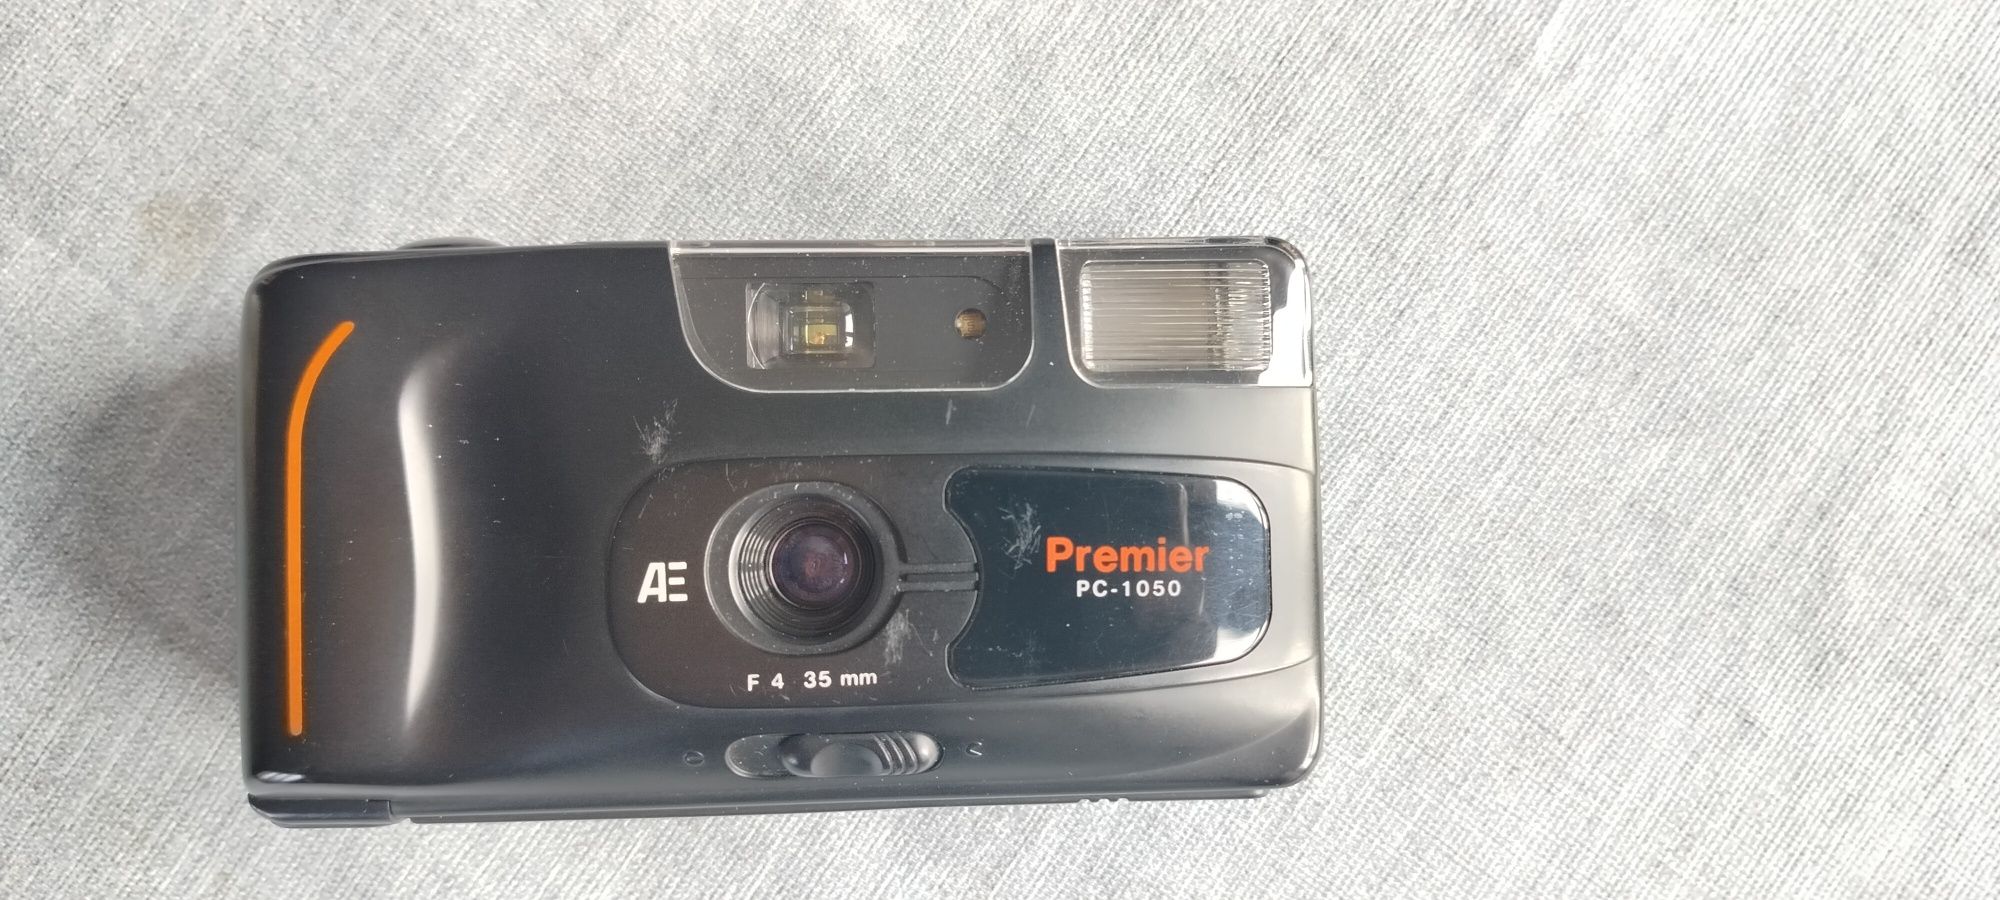 Sprzedam aparat fotograficzny Premier PC -1050 na klisze